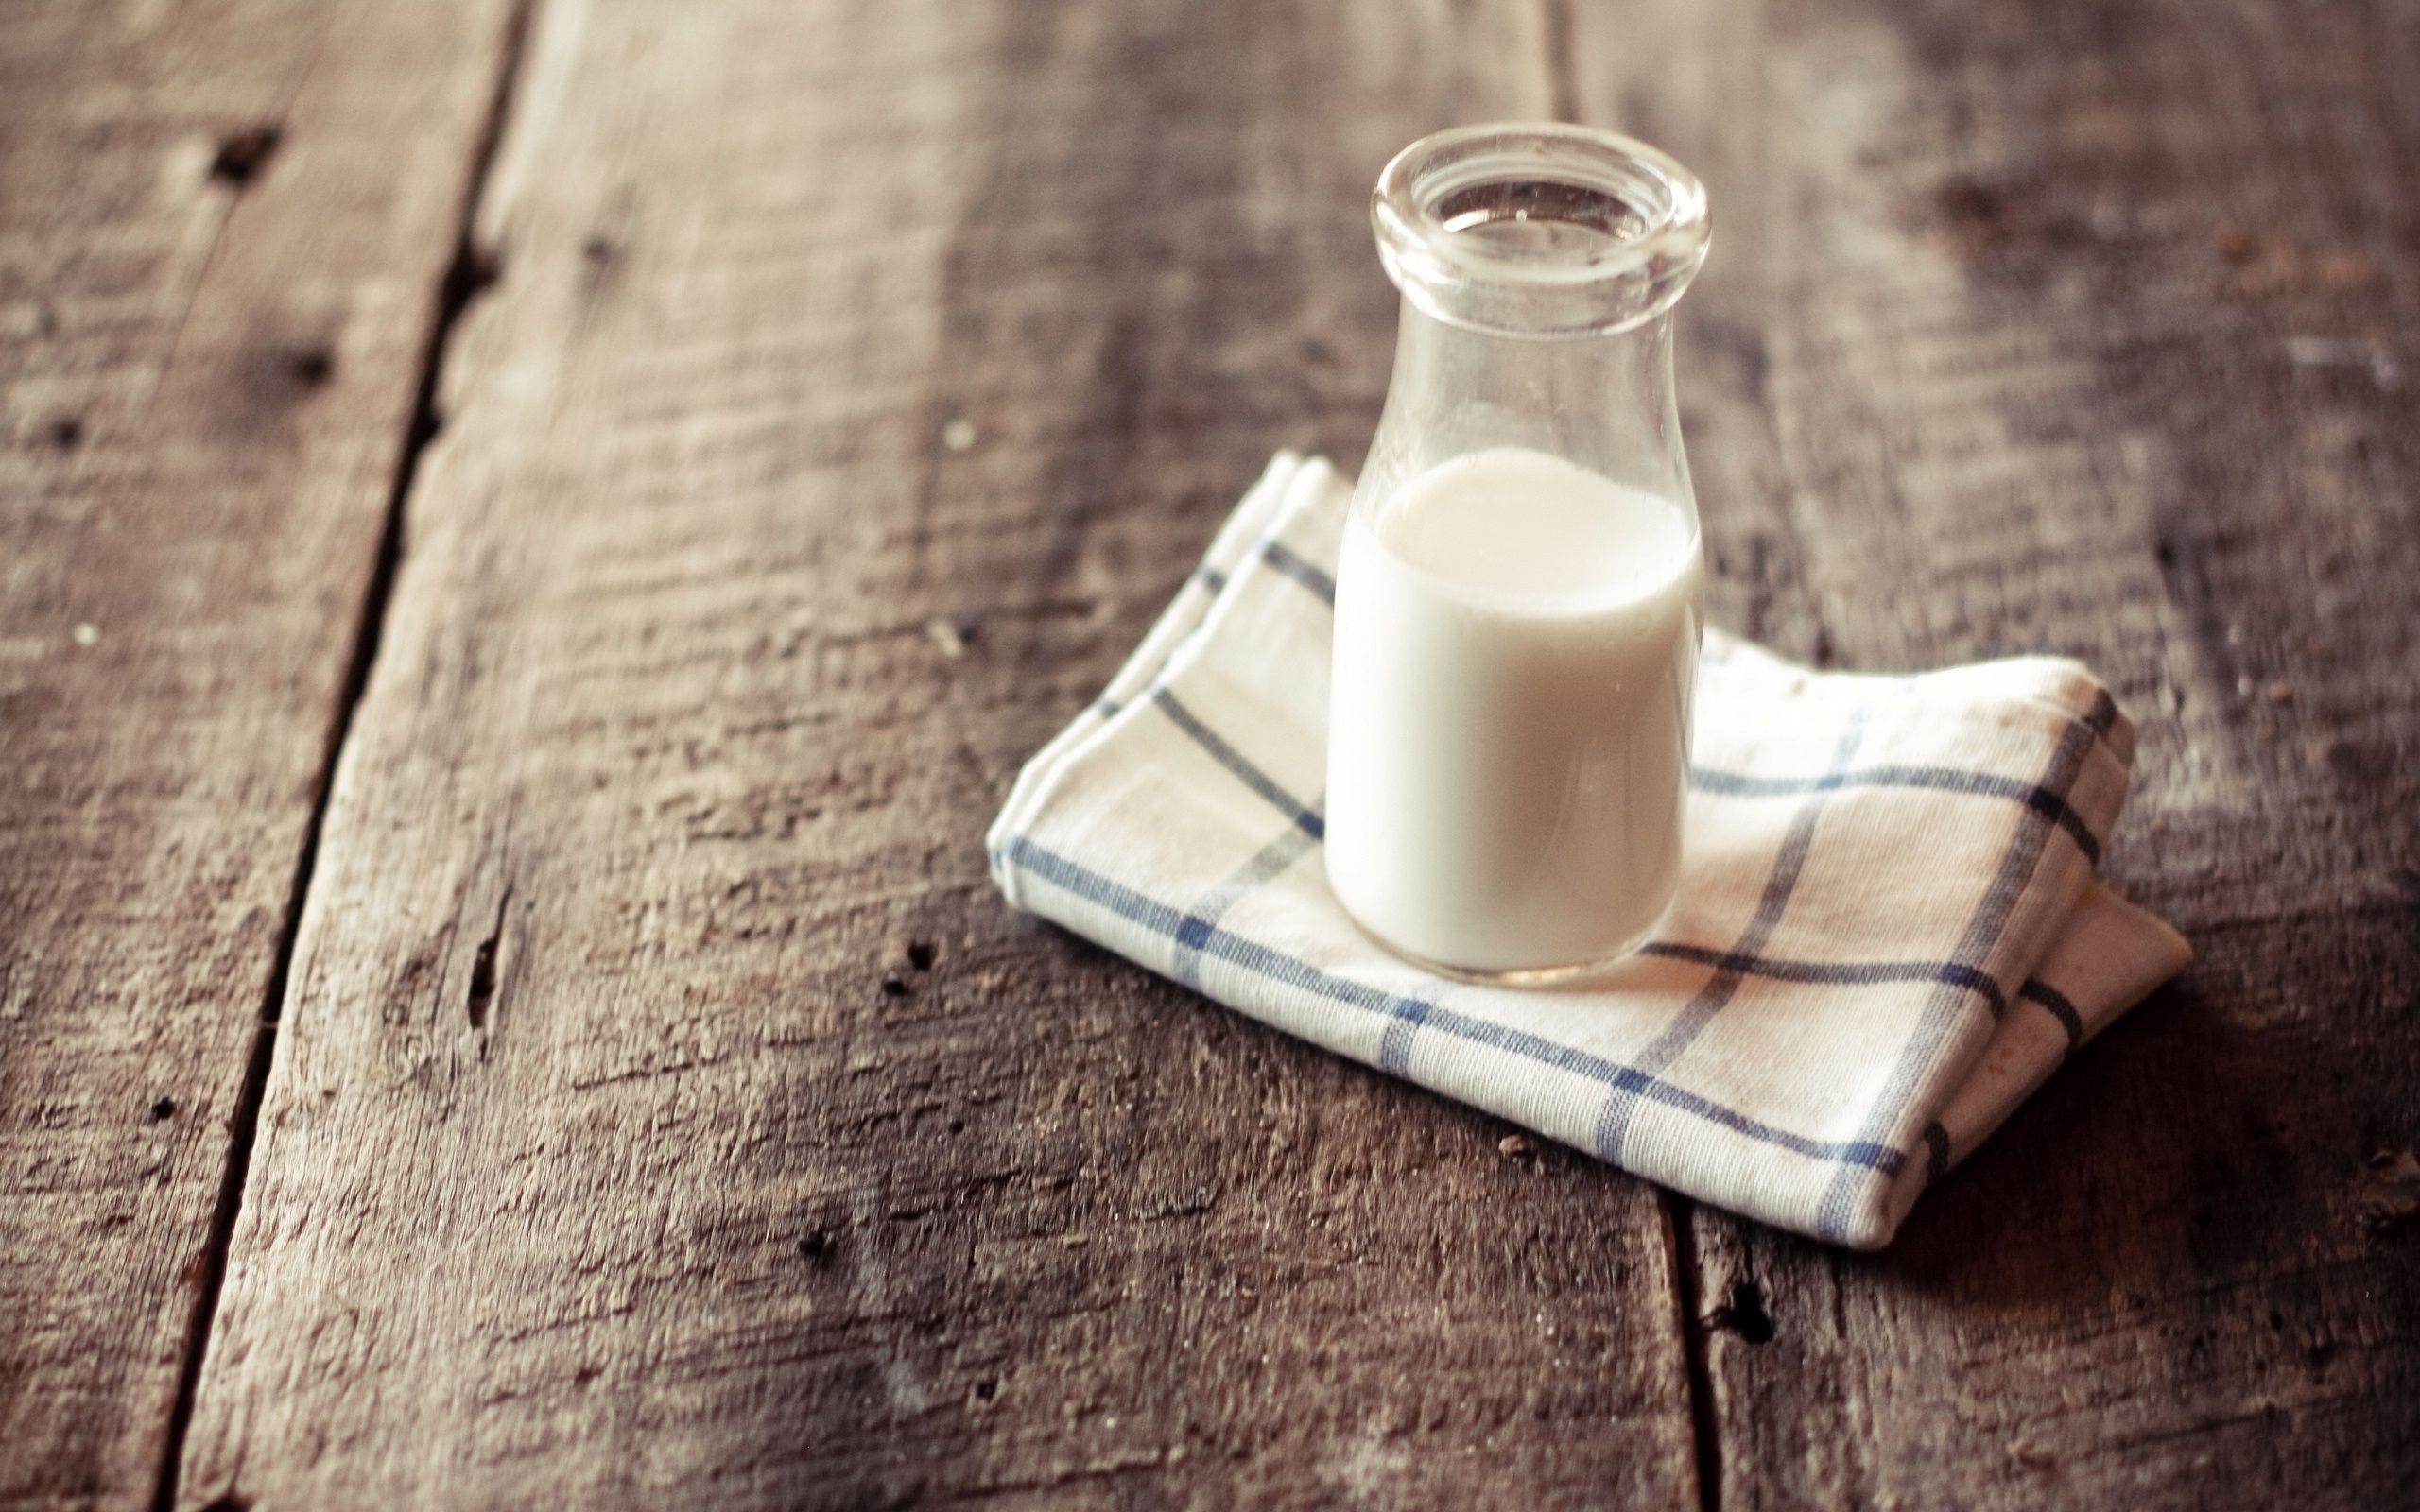 Hình ảnh sữa sẽ khiến bạn thích thú khi chiêm ngưỡng. Từ sữa đậu nành cho đến sữa bò, mỗi loại sữa đều có độ tươi mới và hương vị khác nhau. Hãy thưởng thức và lựa chọn hình ảnh sữa tuyệt vời này cho điện thoại của bạn!